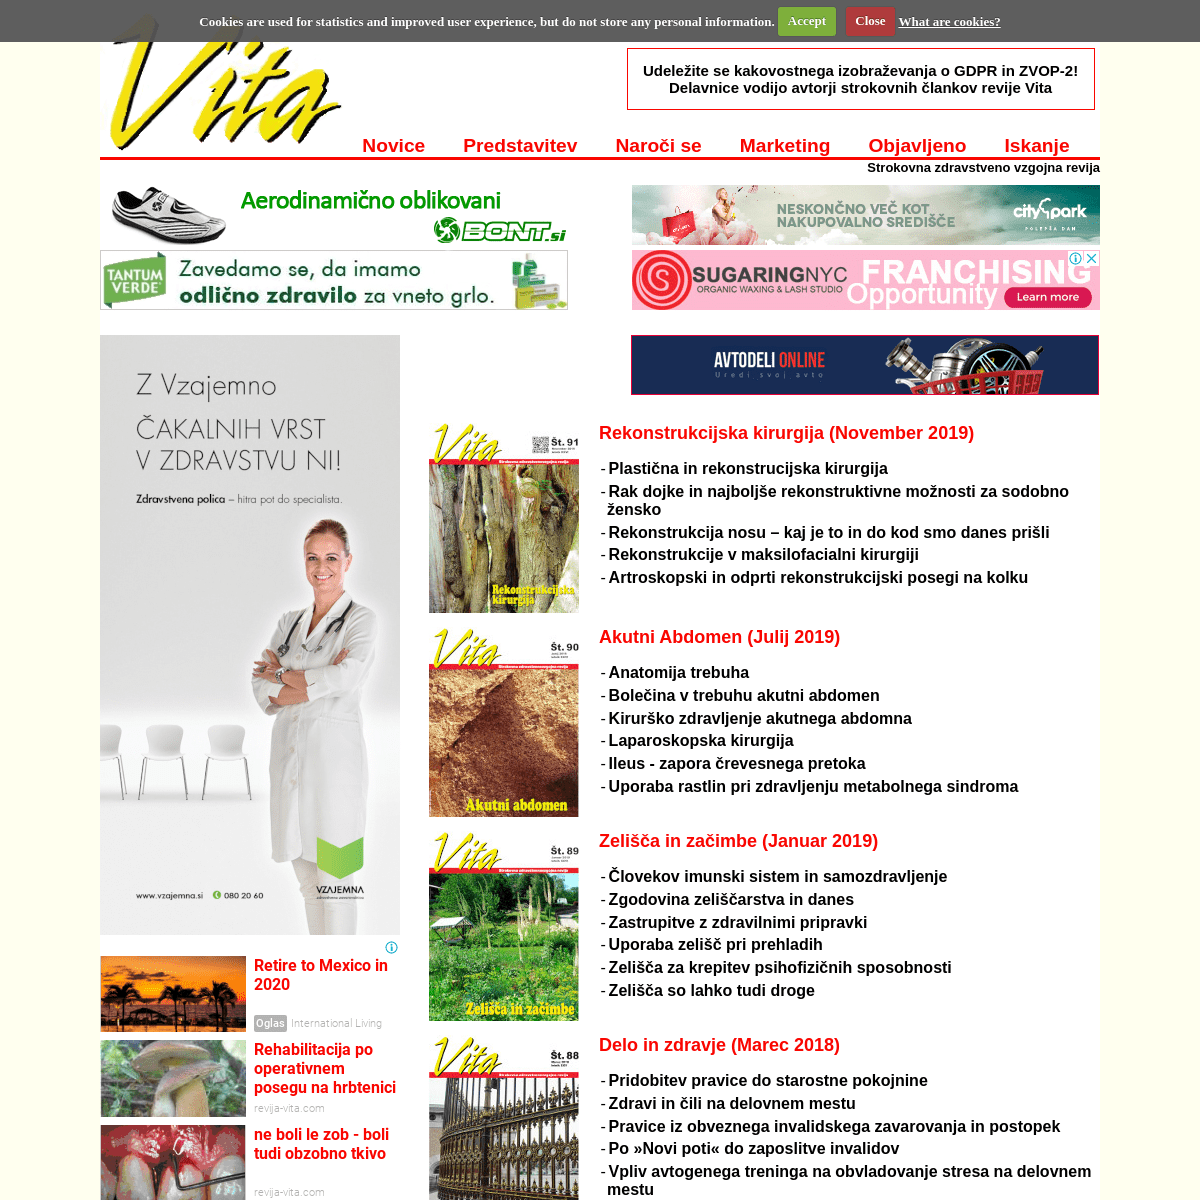 A complete backup of revija-vita.com